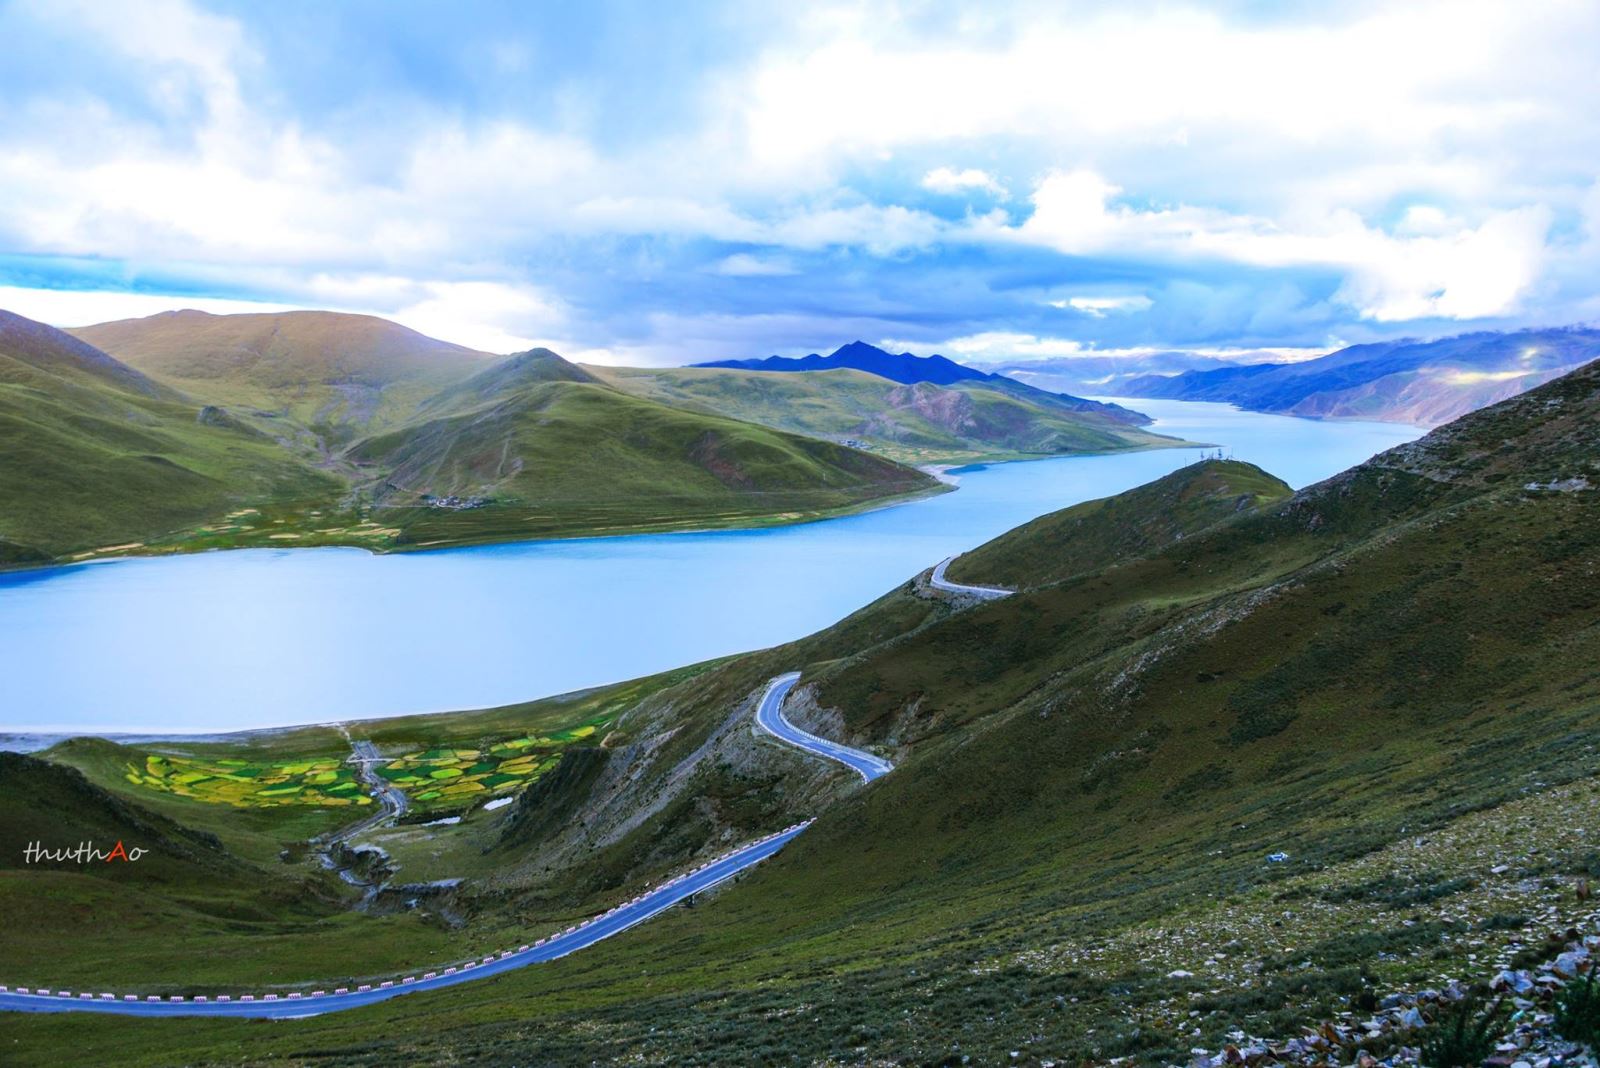 Hồ Yamdrok Tây Tạng